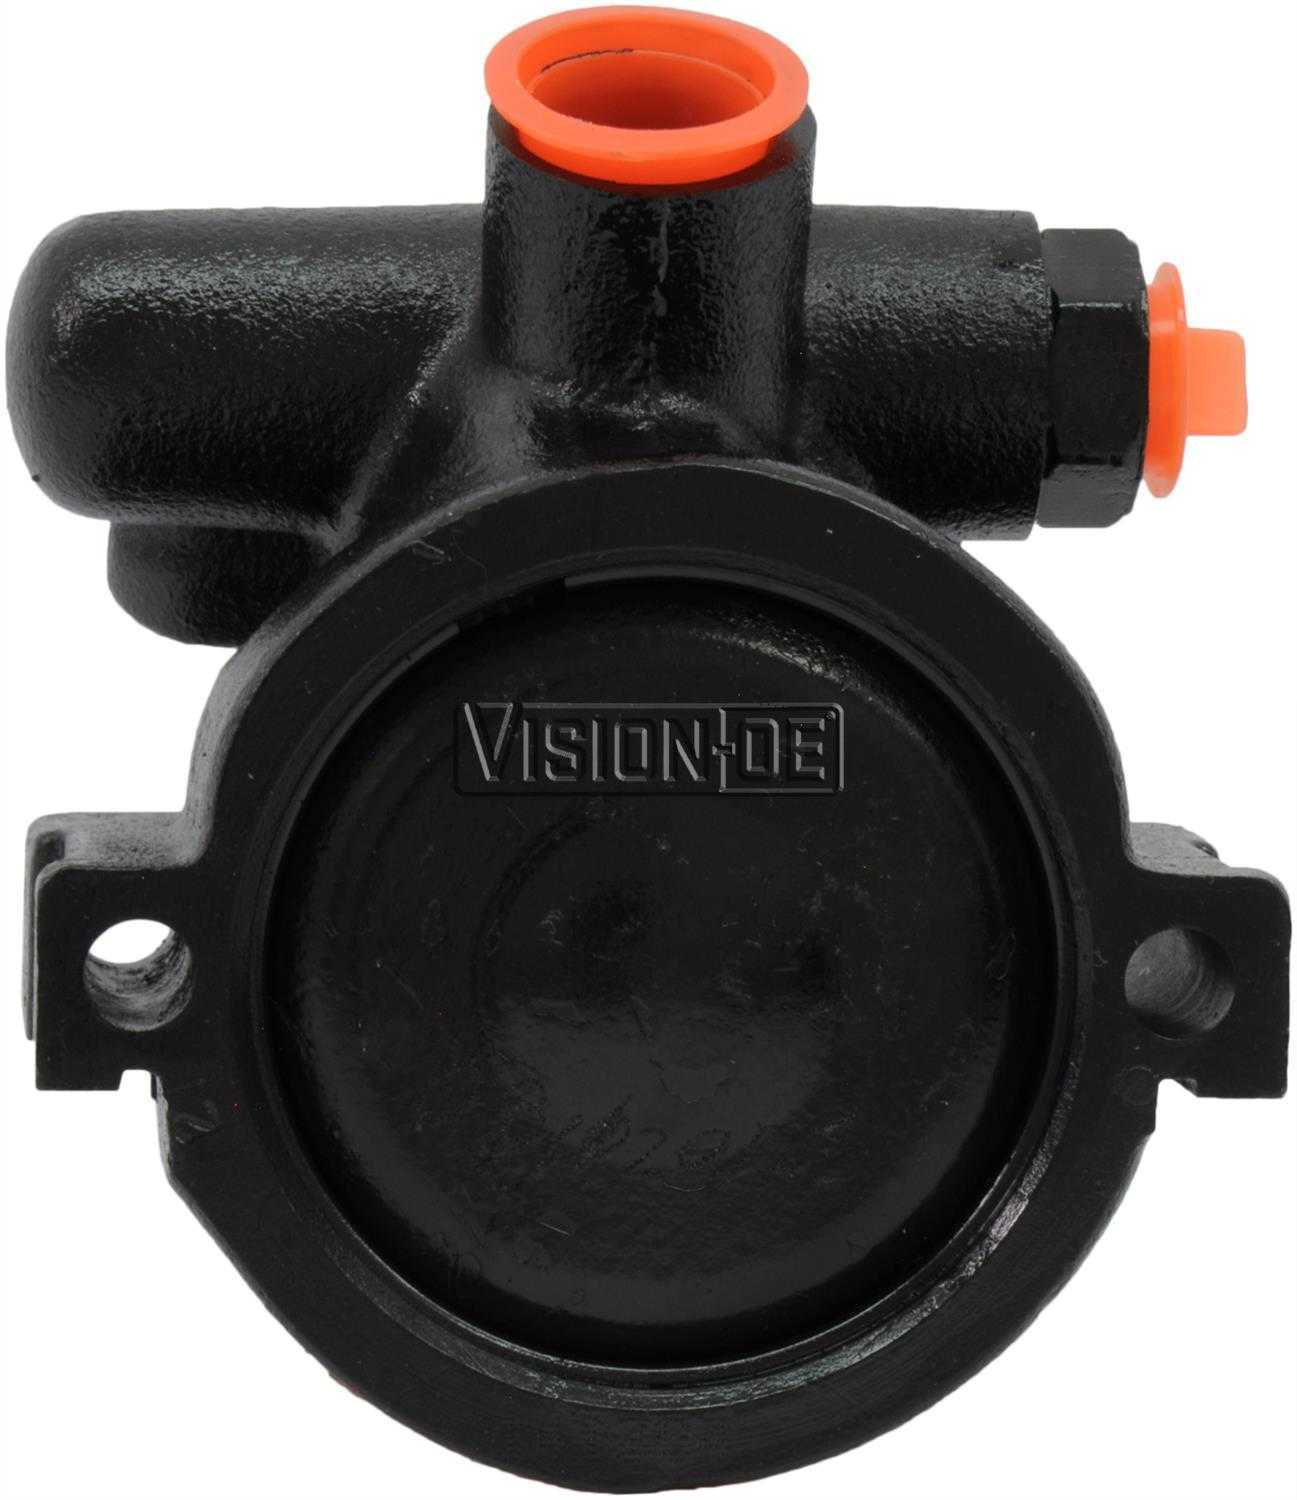 VISION-OE - Reman Power Steering Pump - VOE 734-0143